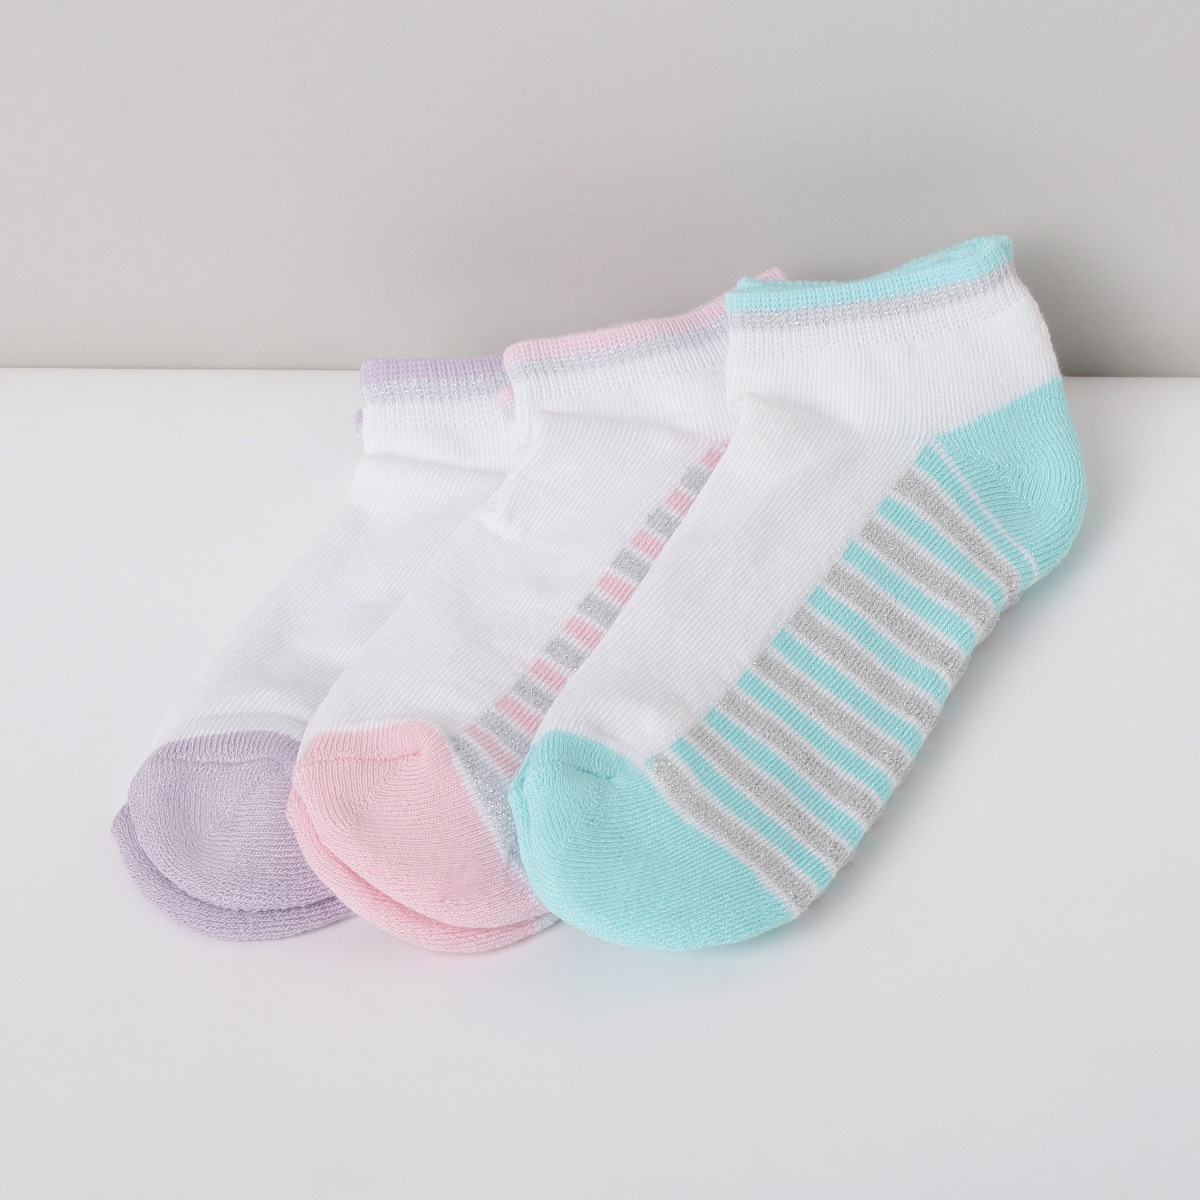 MAX Printed Socks - Set of 3